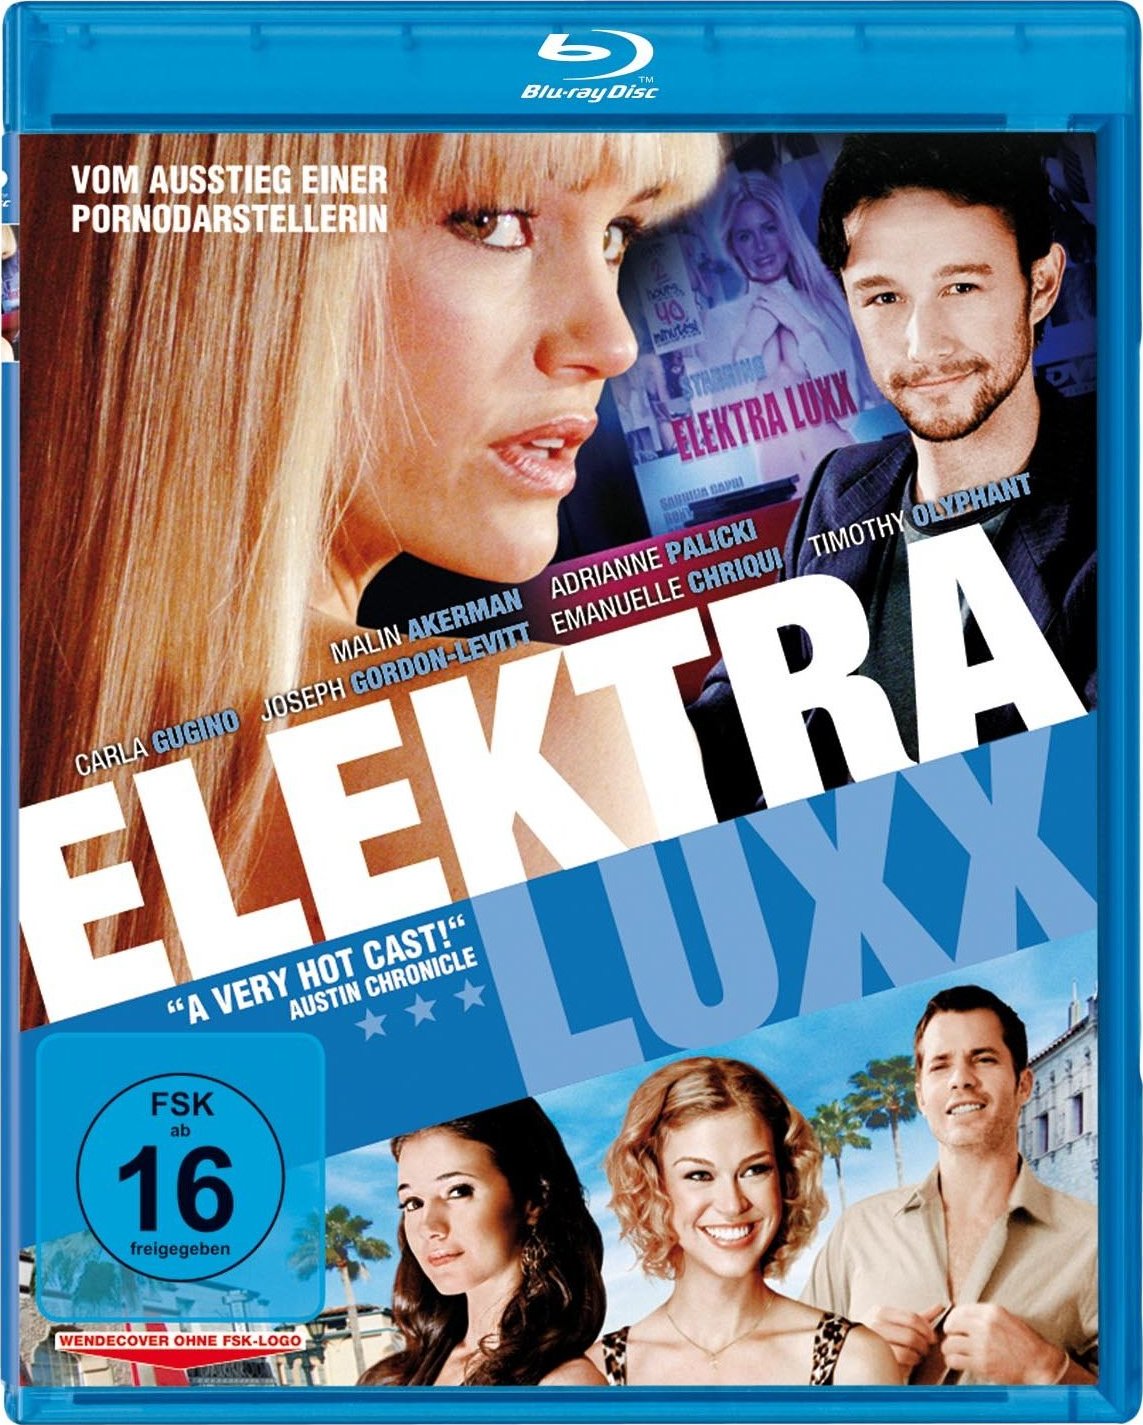 Elektra Luxx HD wallpapers, Desktop wallpaper - most viewed